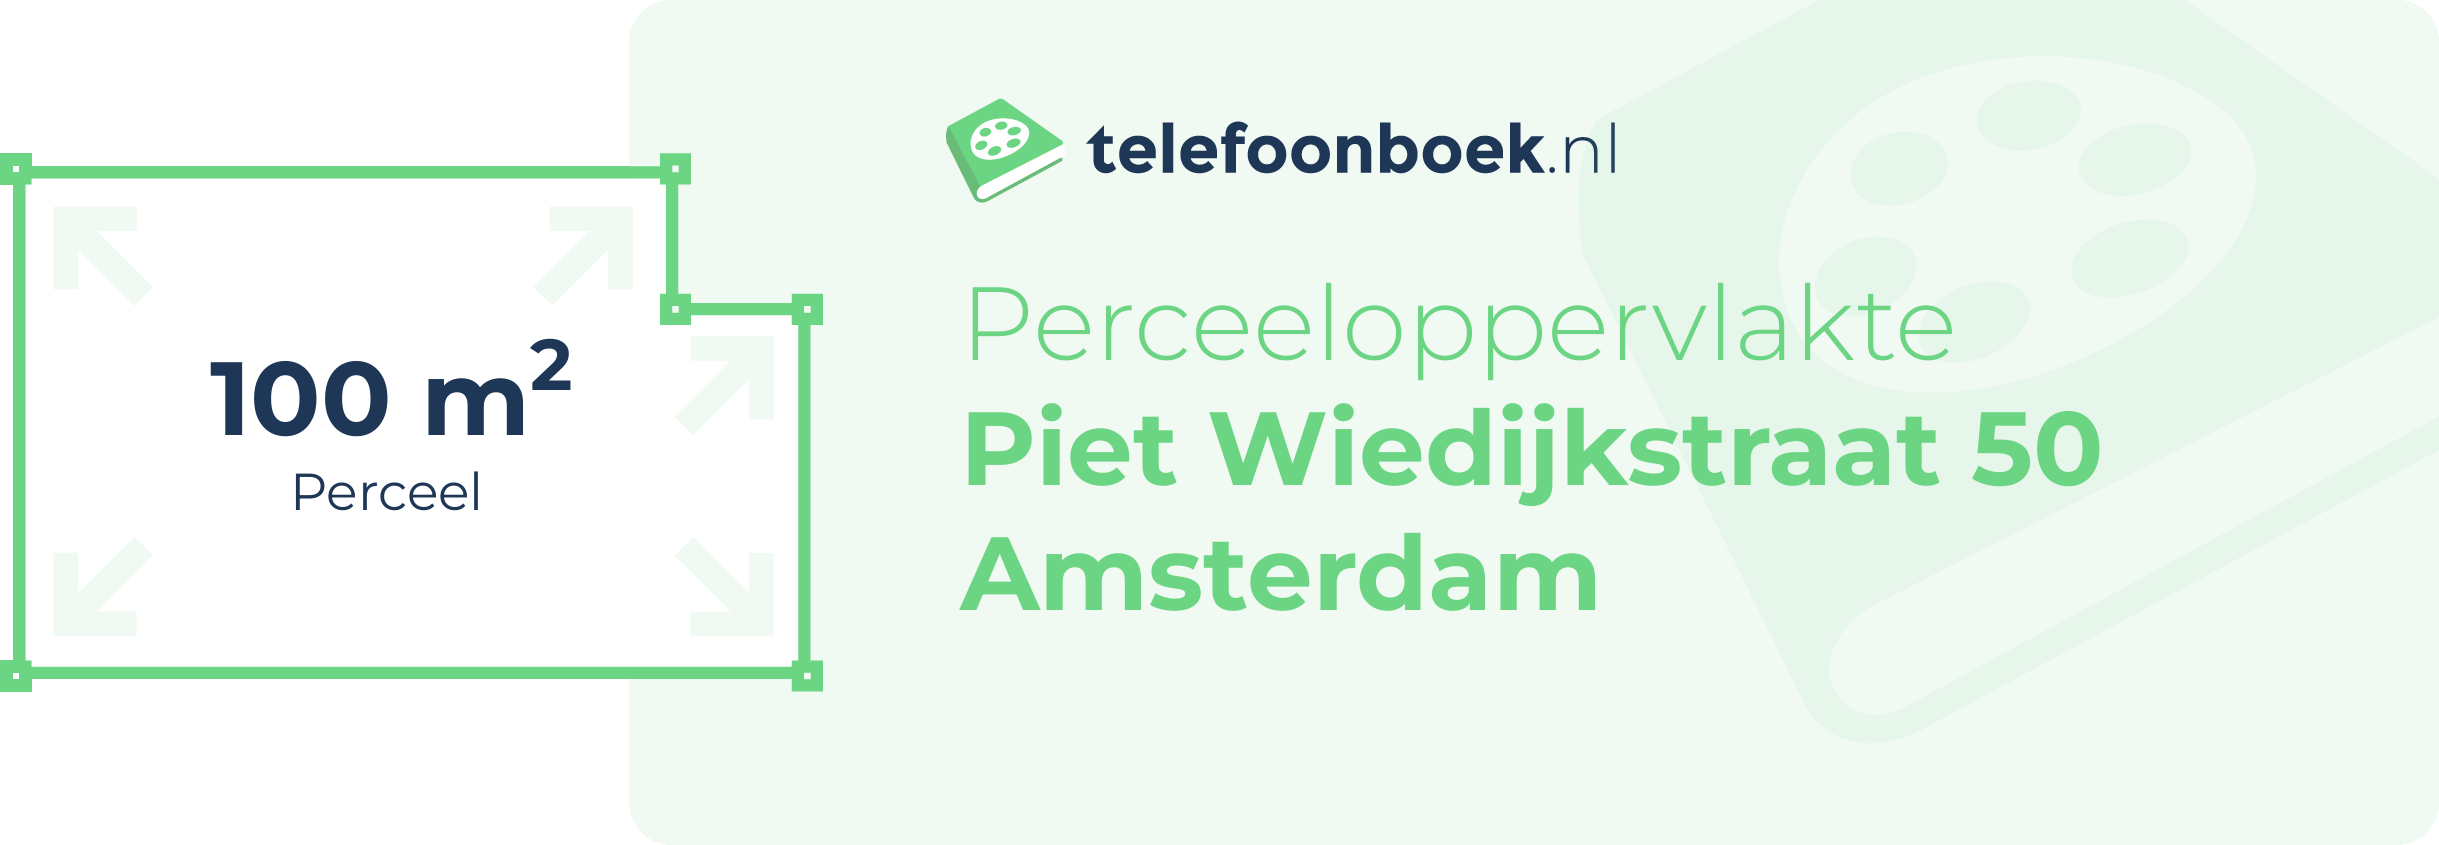 Perceeloppervlakte Piet Wiedijkstraat 50 Amsterdam